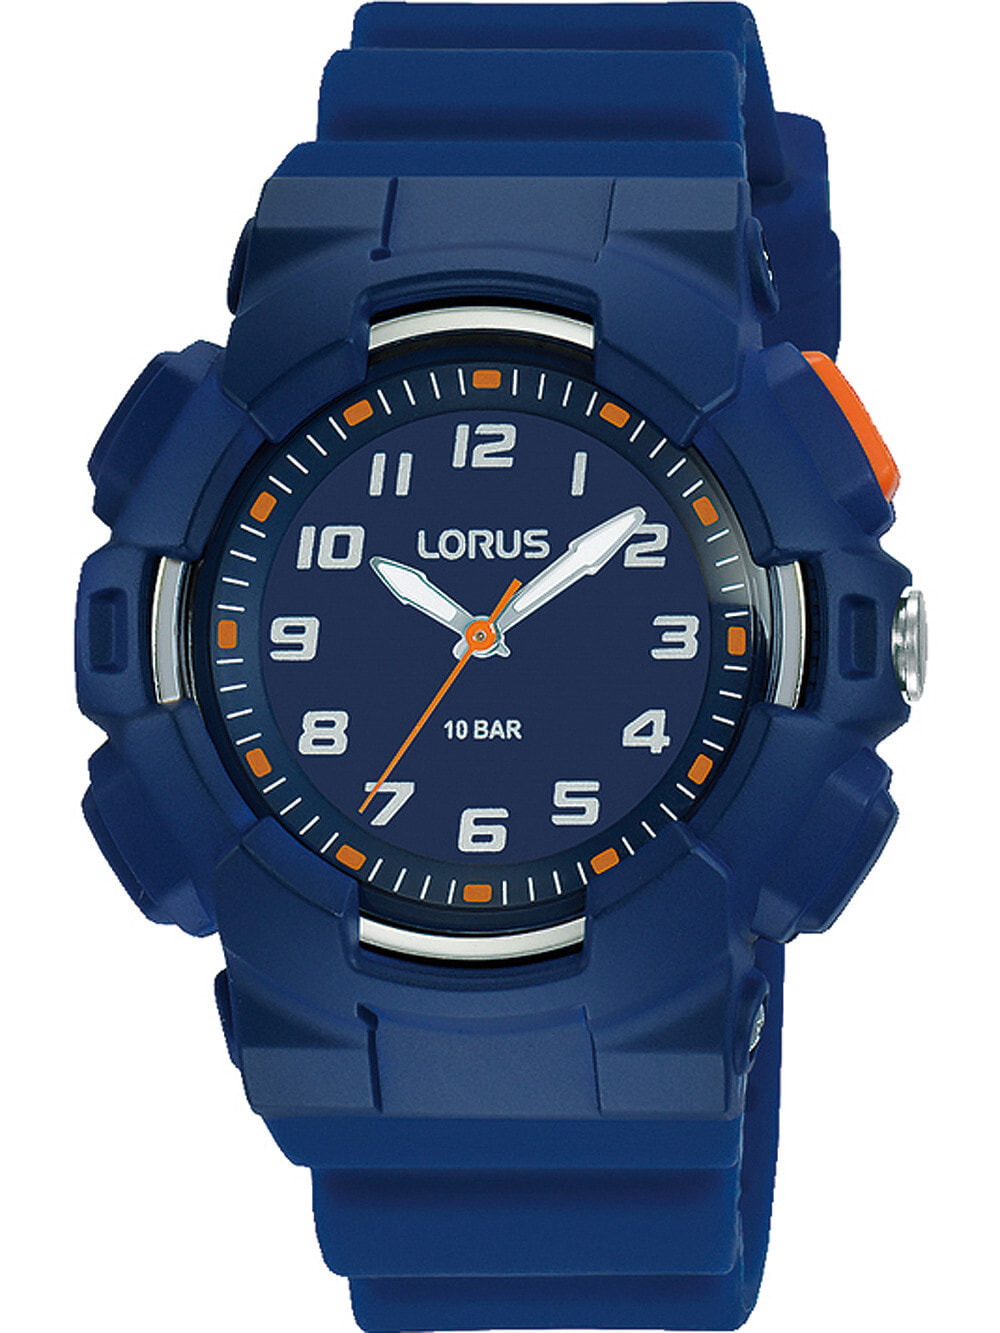 Мужские наручные часы с синим браслетом Lorus R2349NX9 kids 38mm 10ATM